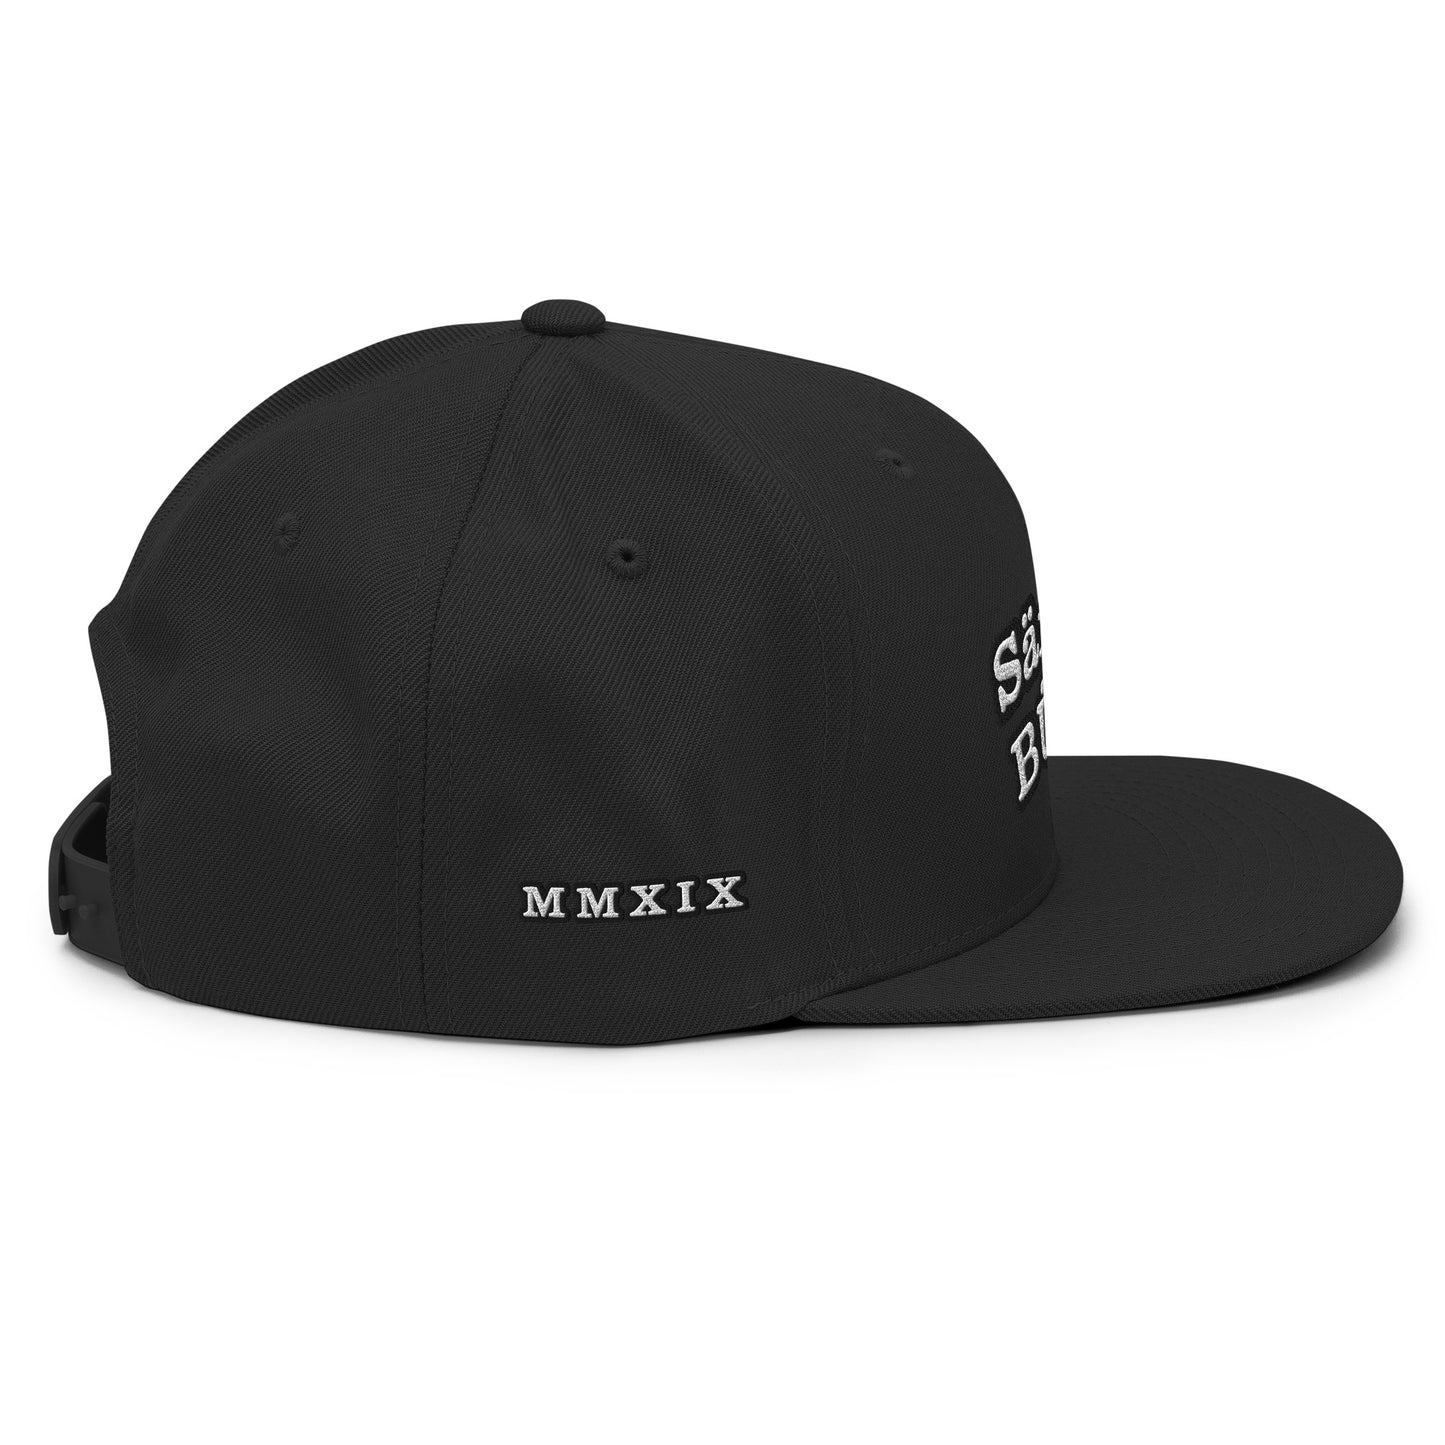 MMXIX Snapback